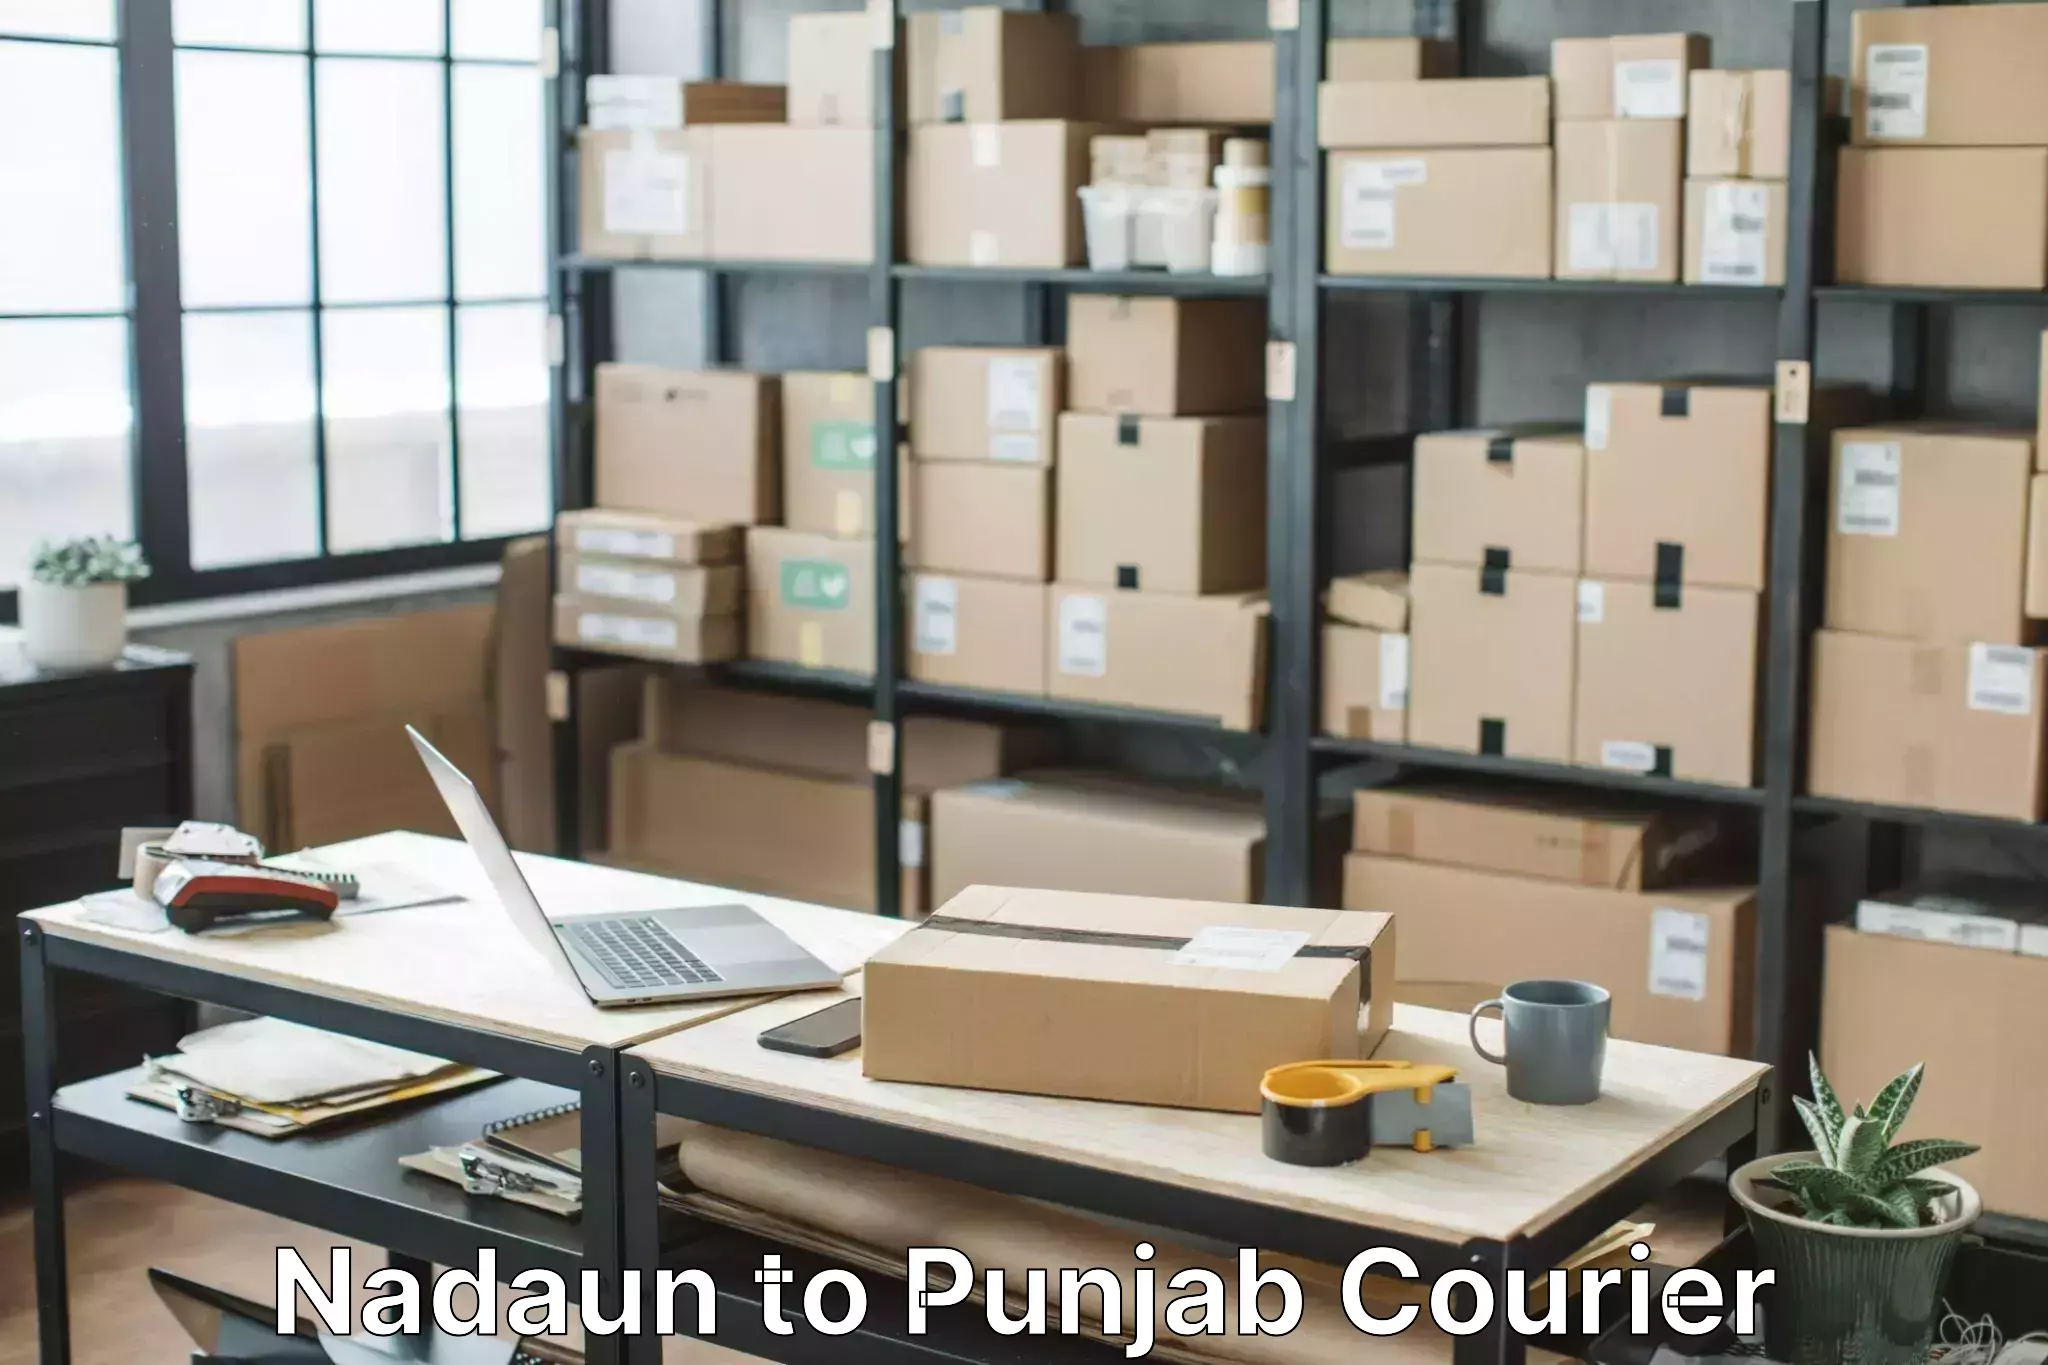 Professional packing services Nadaun to Punjab